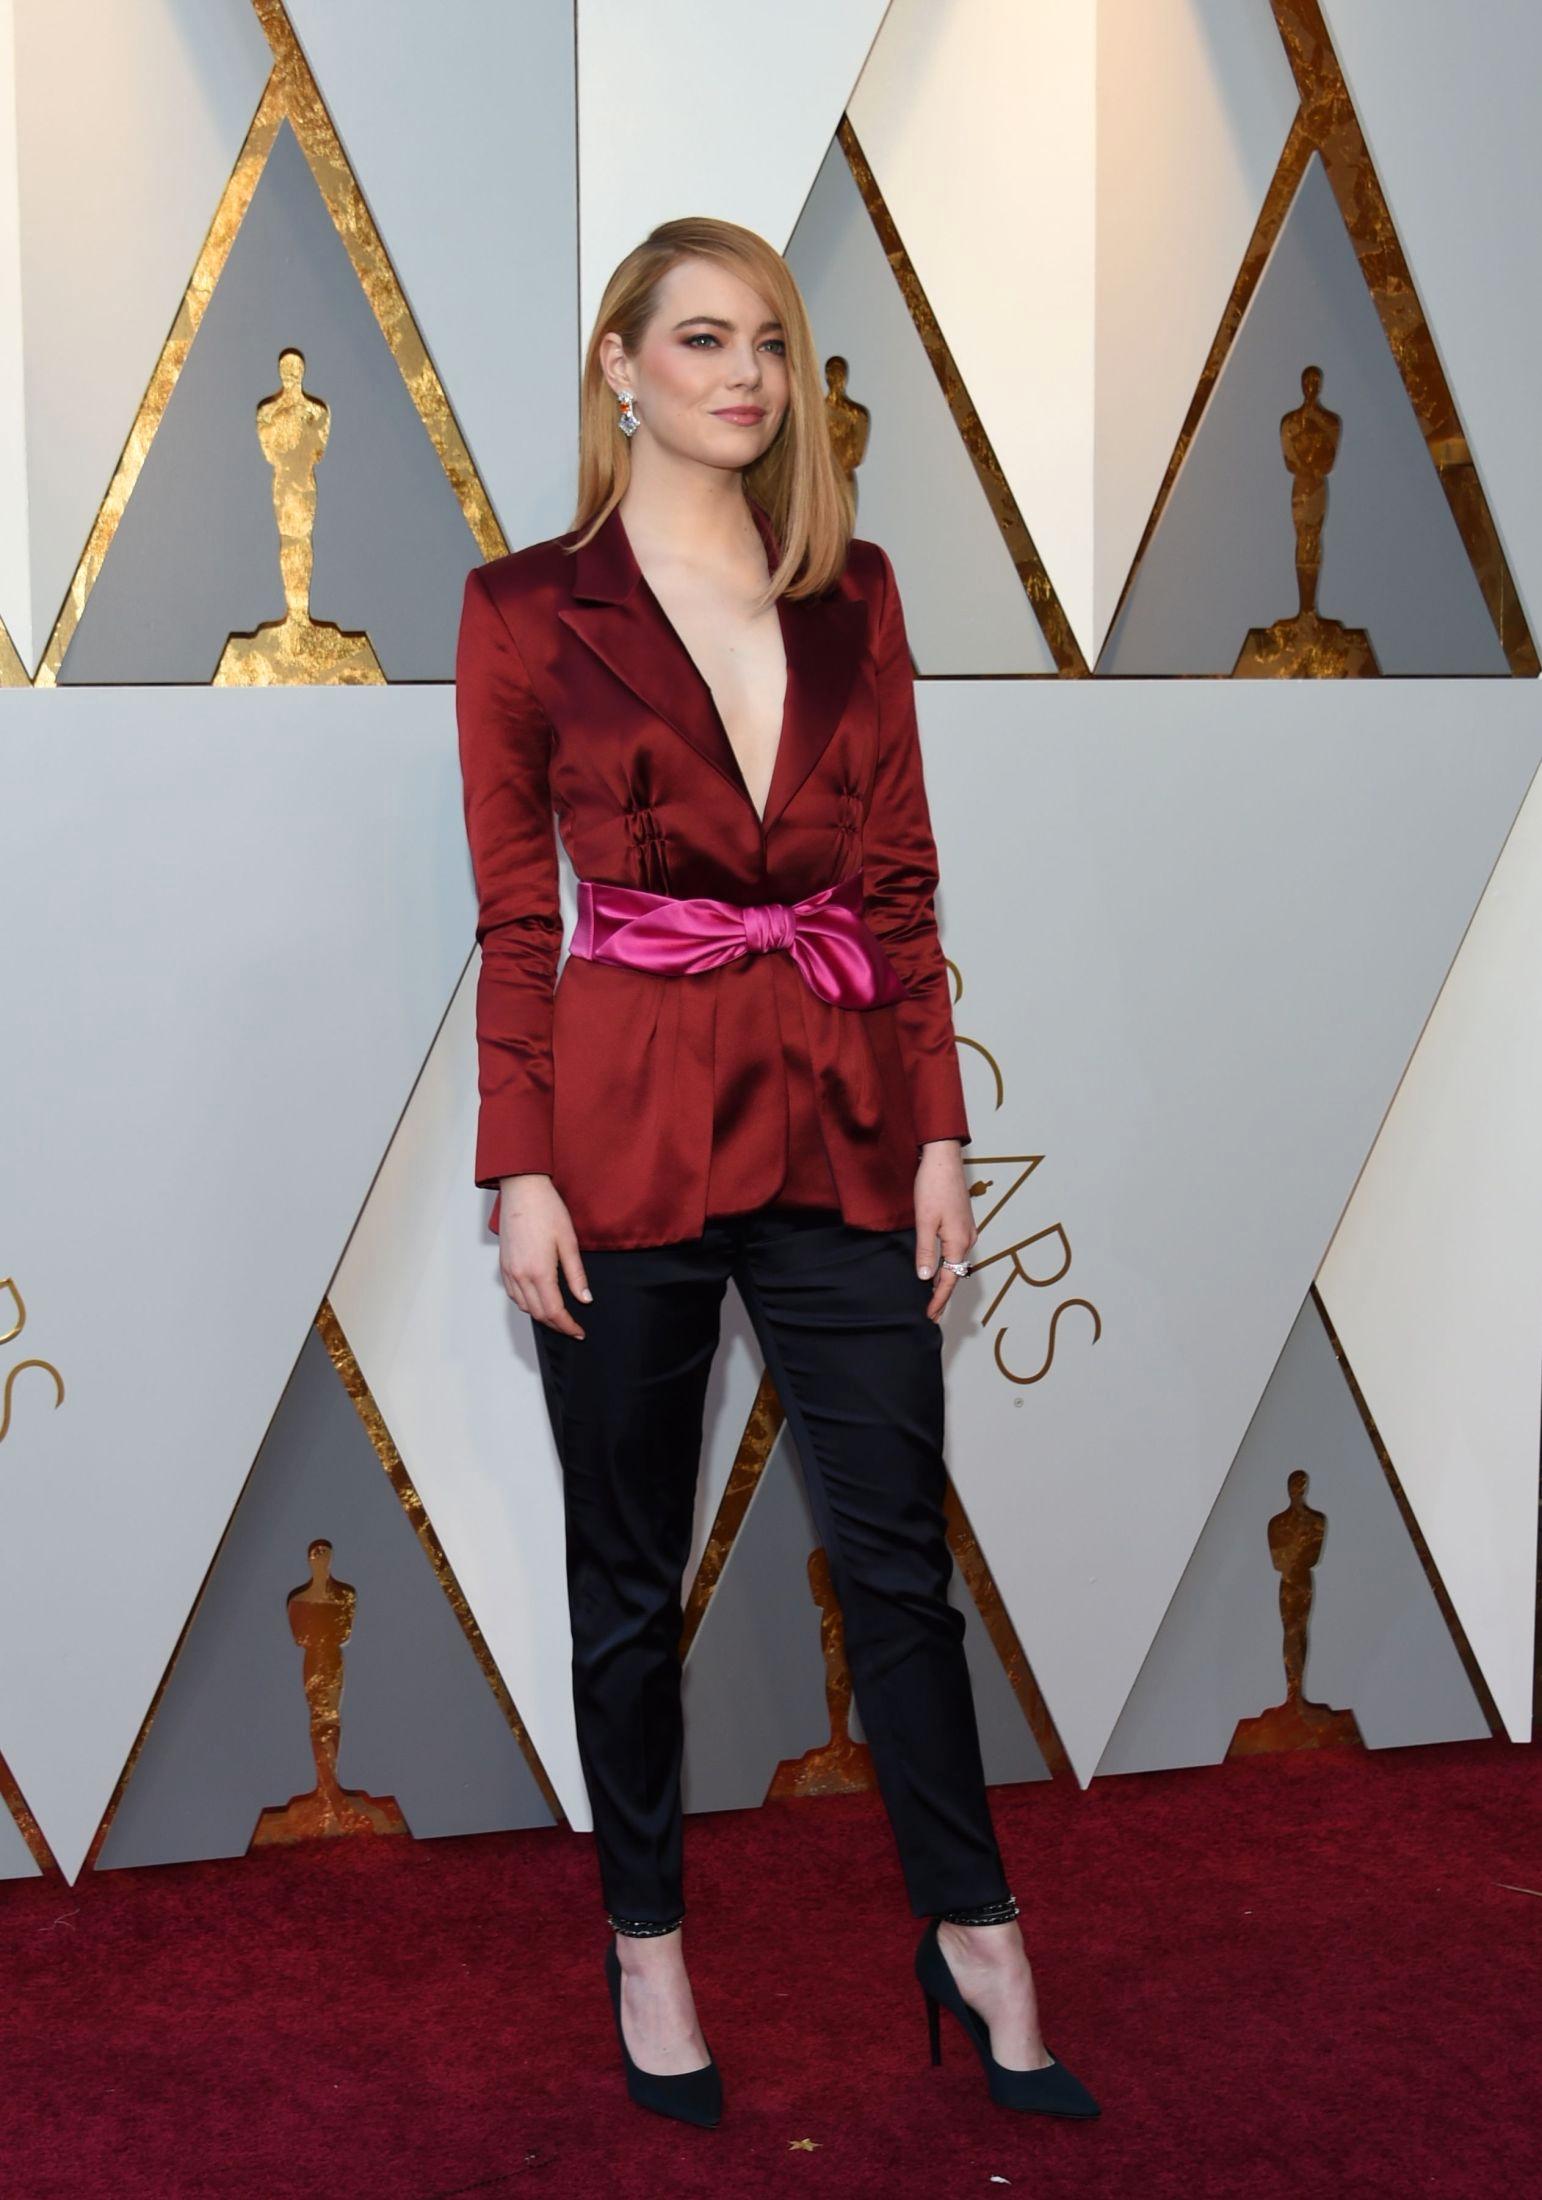 GIKK FOR DRESS: Skuespiller Emma Stone i antrekk fra Louis Vuitton. Foto: AFP